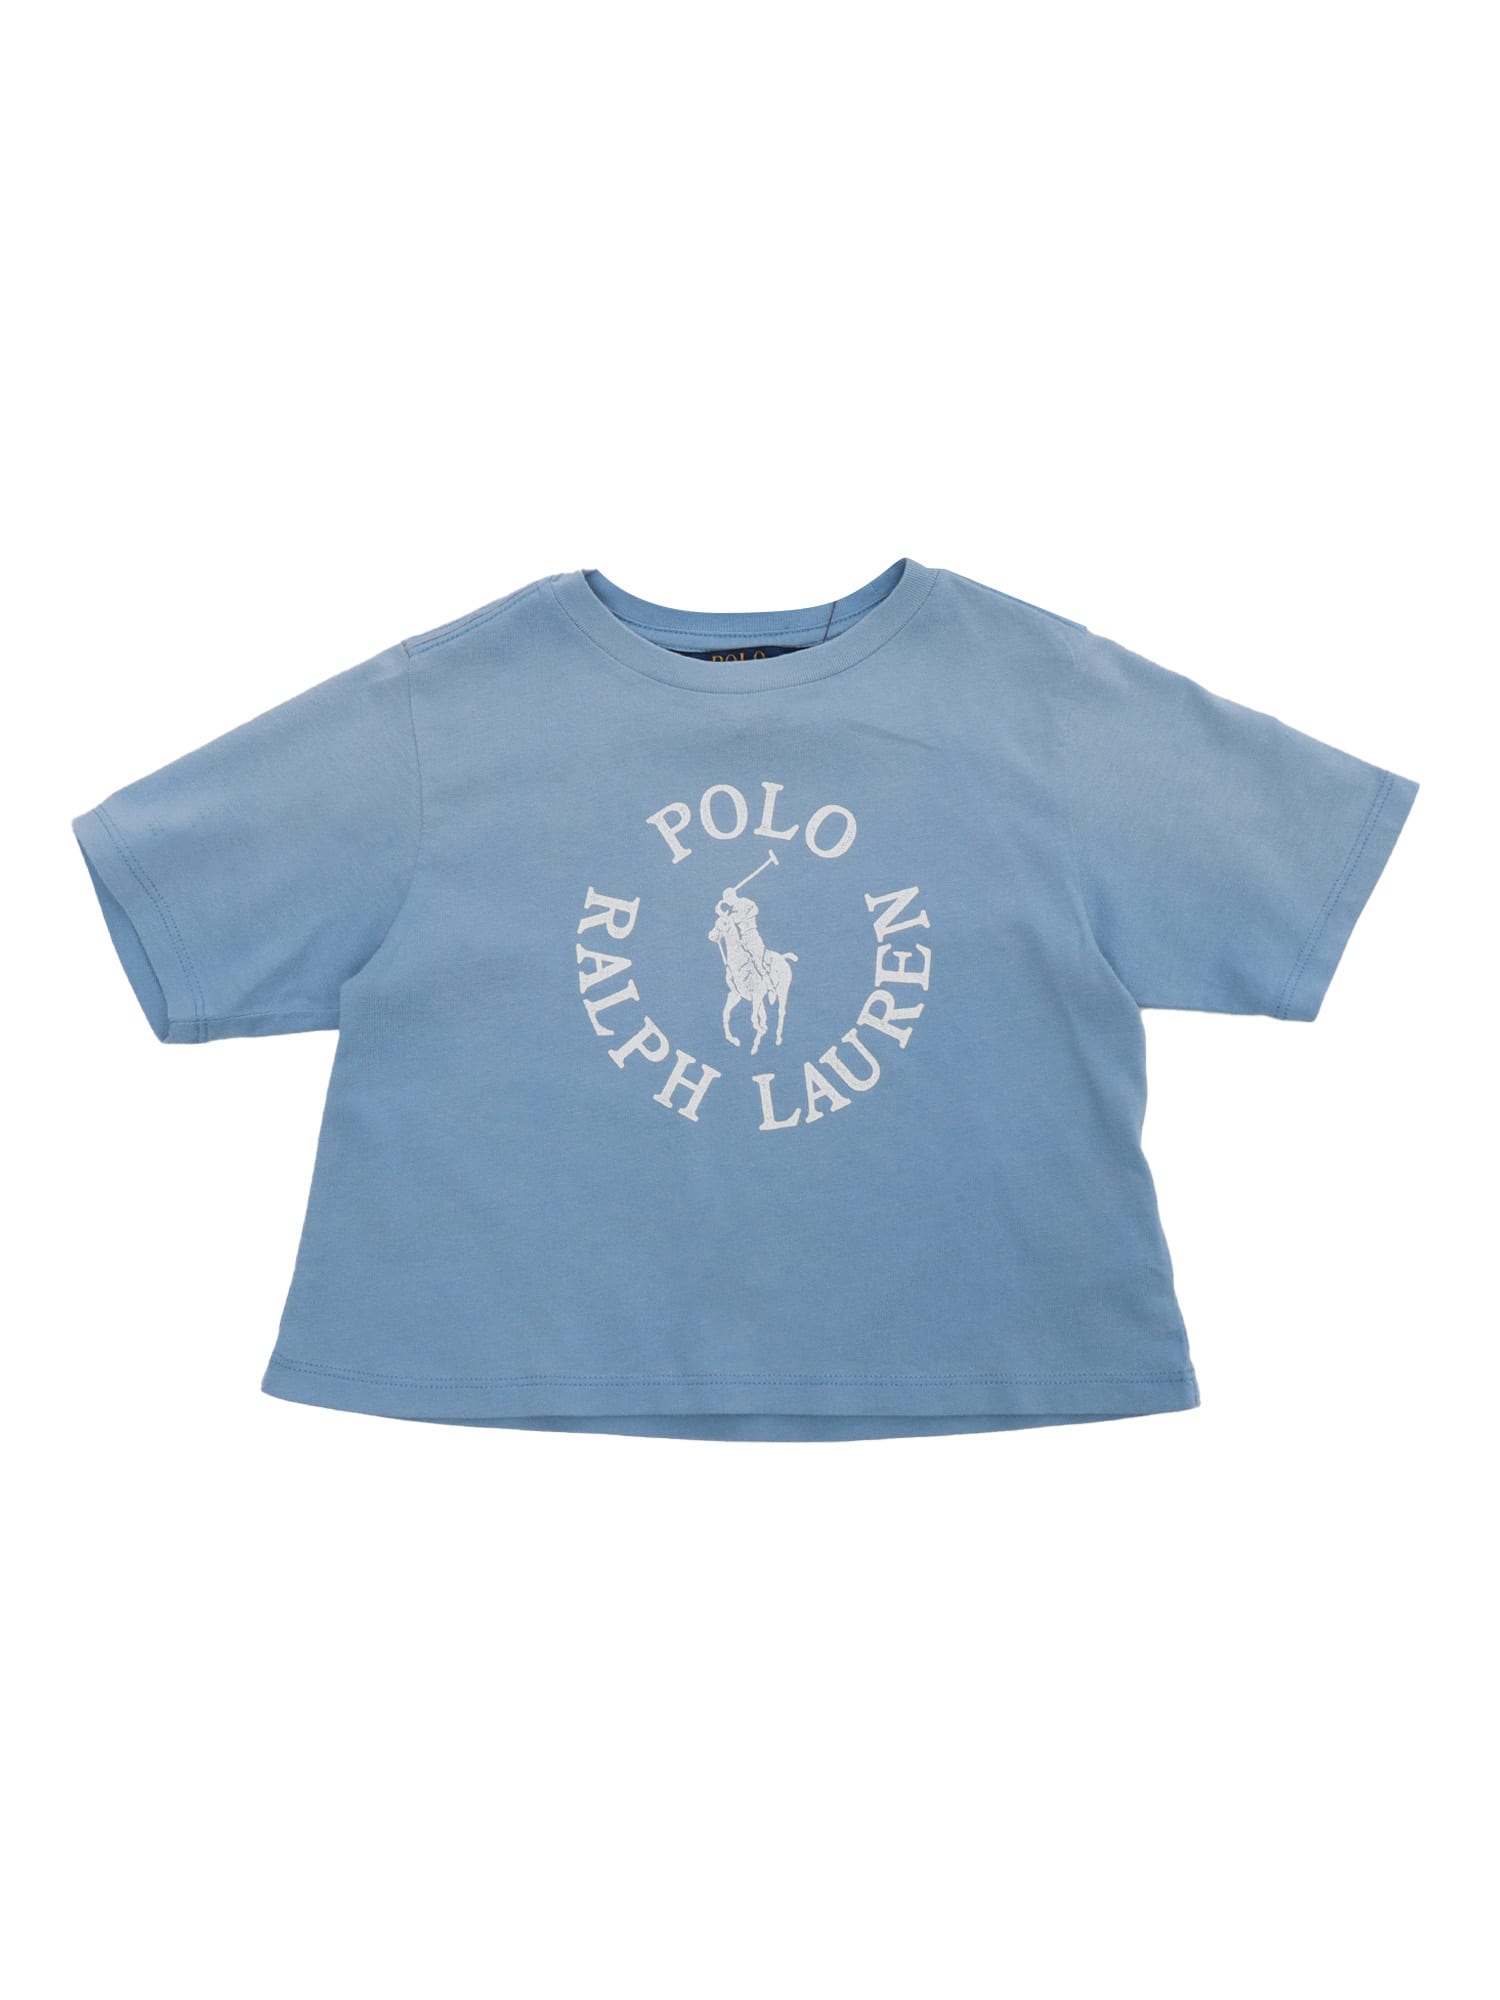 Polo Ralph Lauren Kids' Light Blue T-shirt